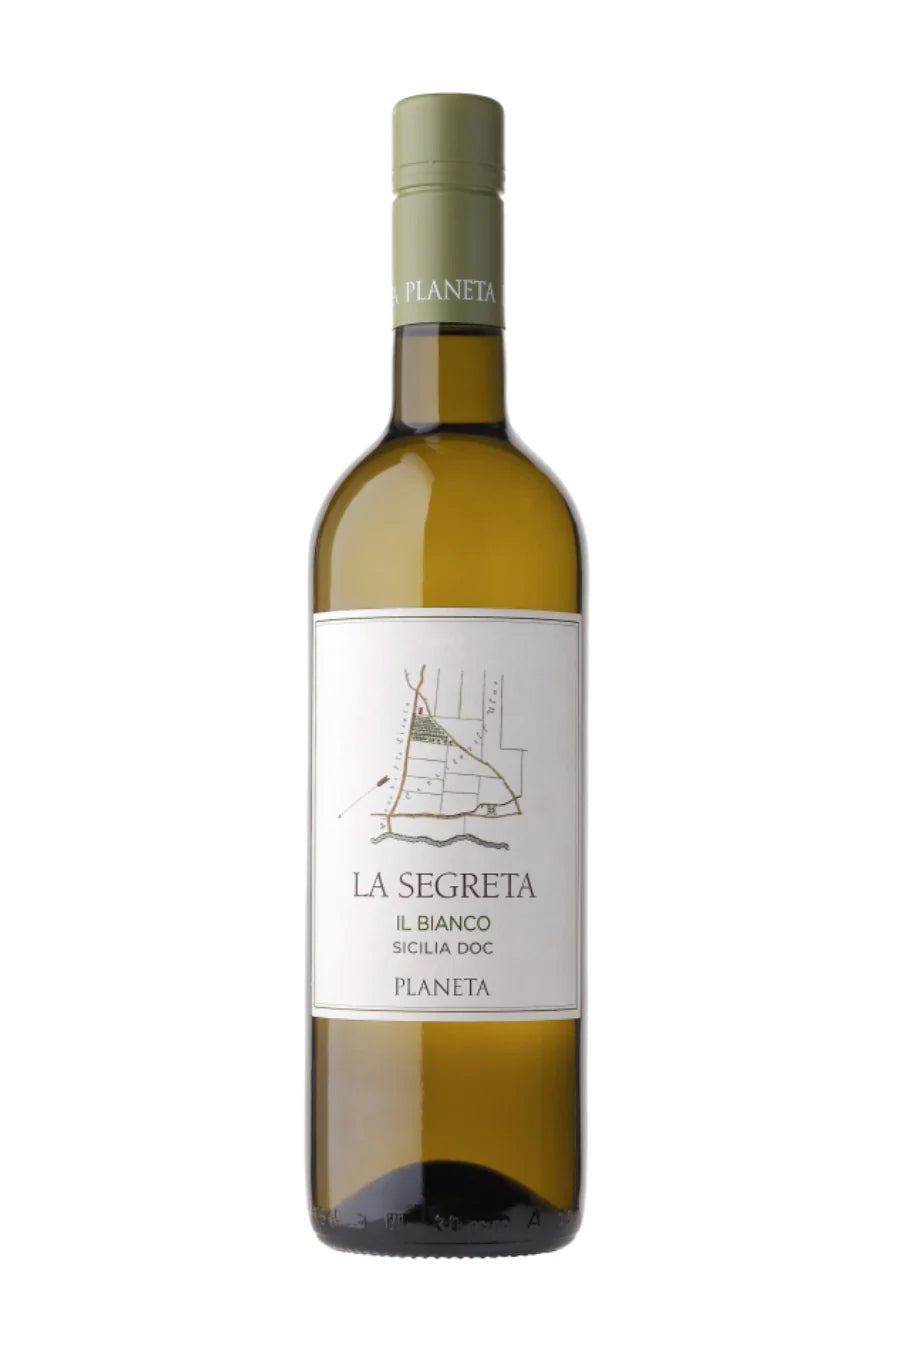 Planeta La Segreta il Bianco 750mL a straw colored clear glass wine bottle with a white label and earth green top